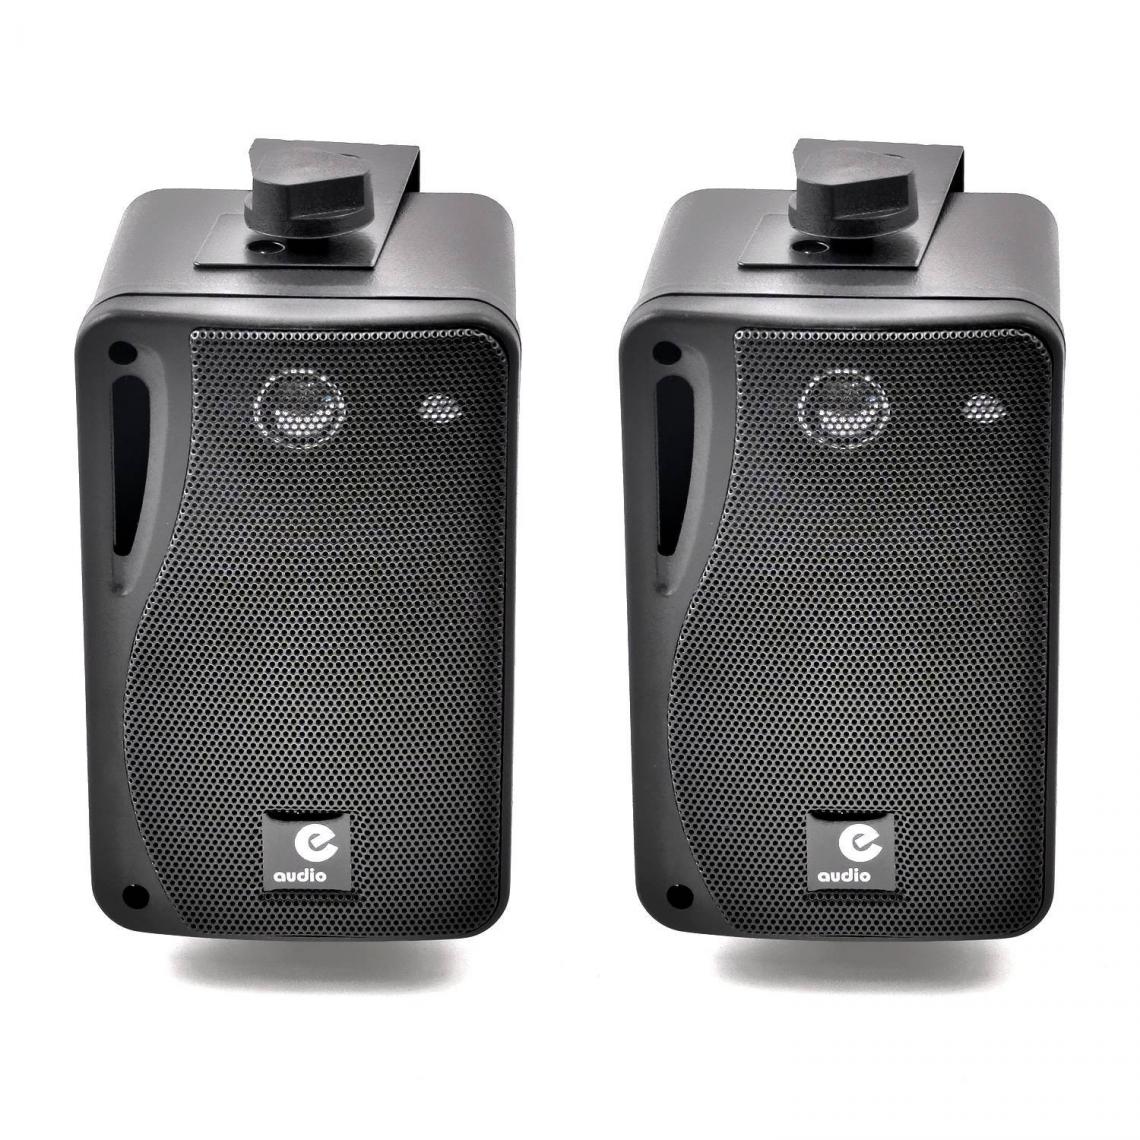 E-Audio - Paire de mini Enceintes passives noires 80W 7.5cm 3 voies en ABS avec étrier de fixation - Enceintes Hifi